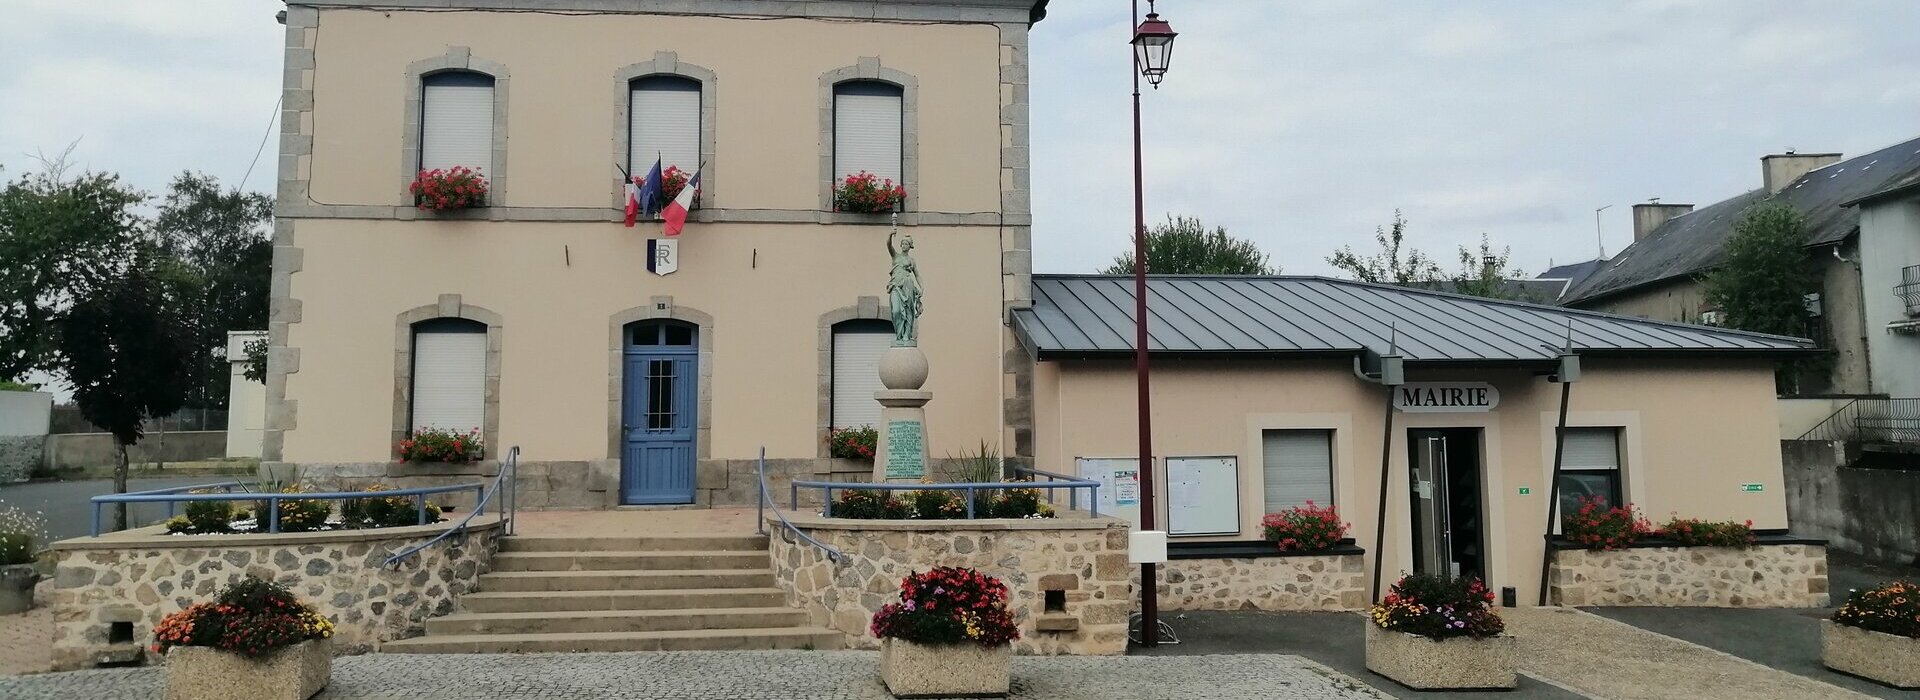 Mairie de Saint Maurice La Souterraine dans le 23 Creuse